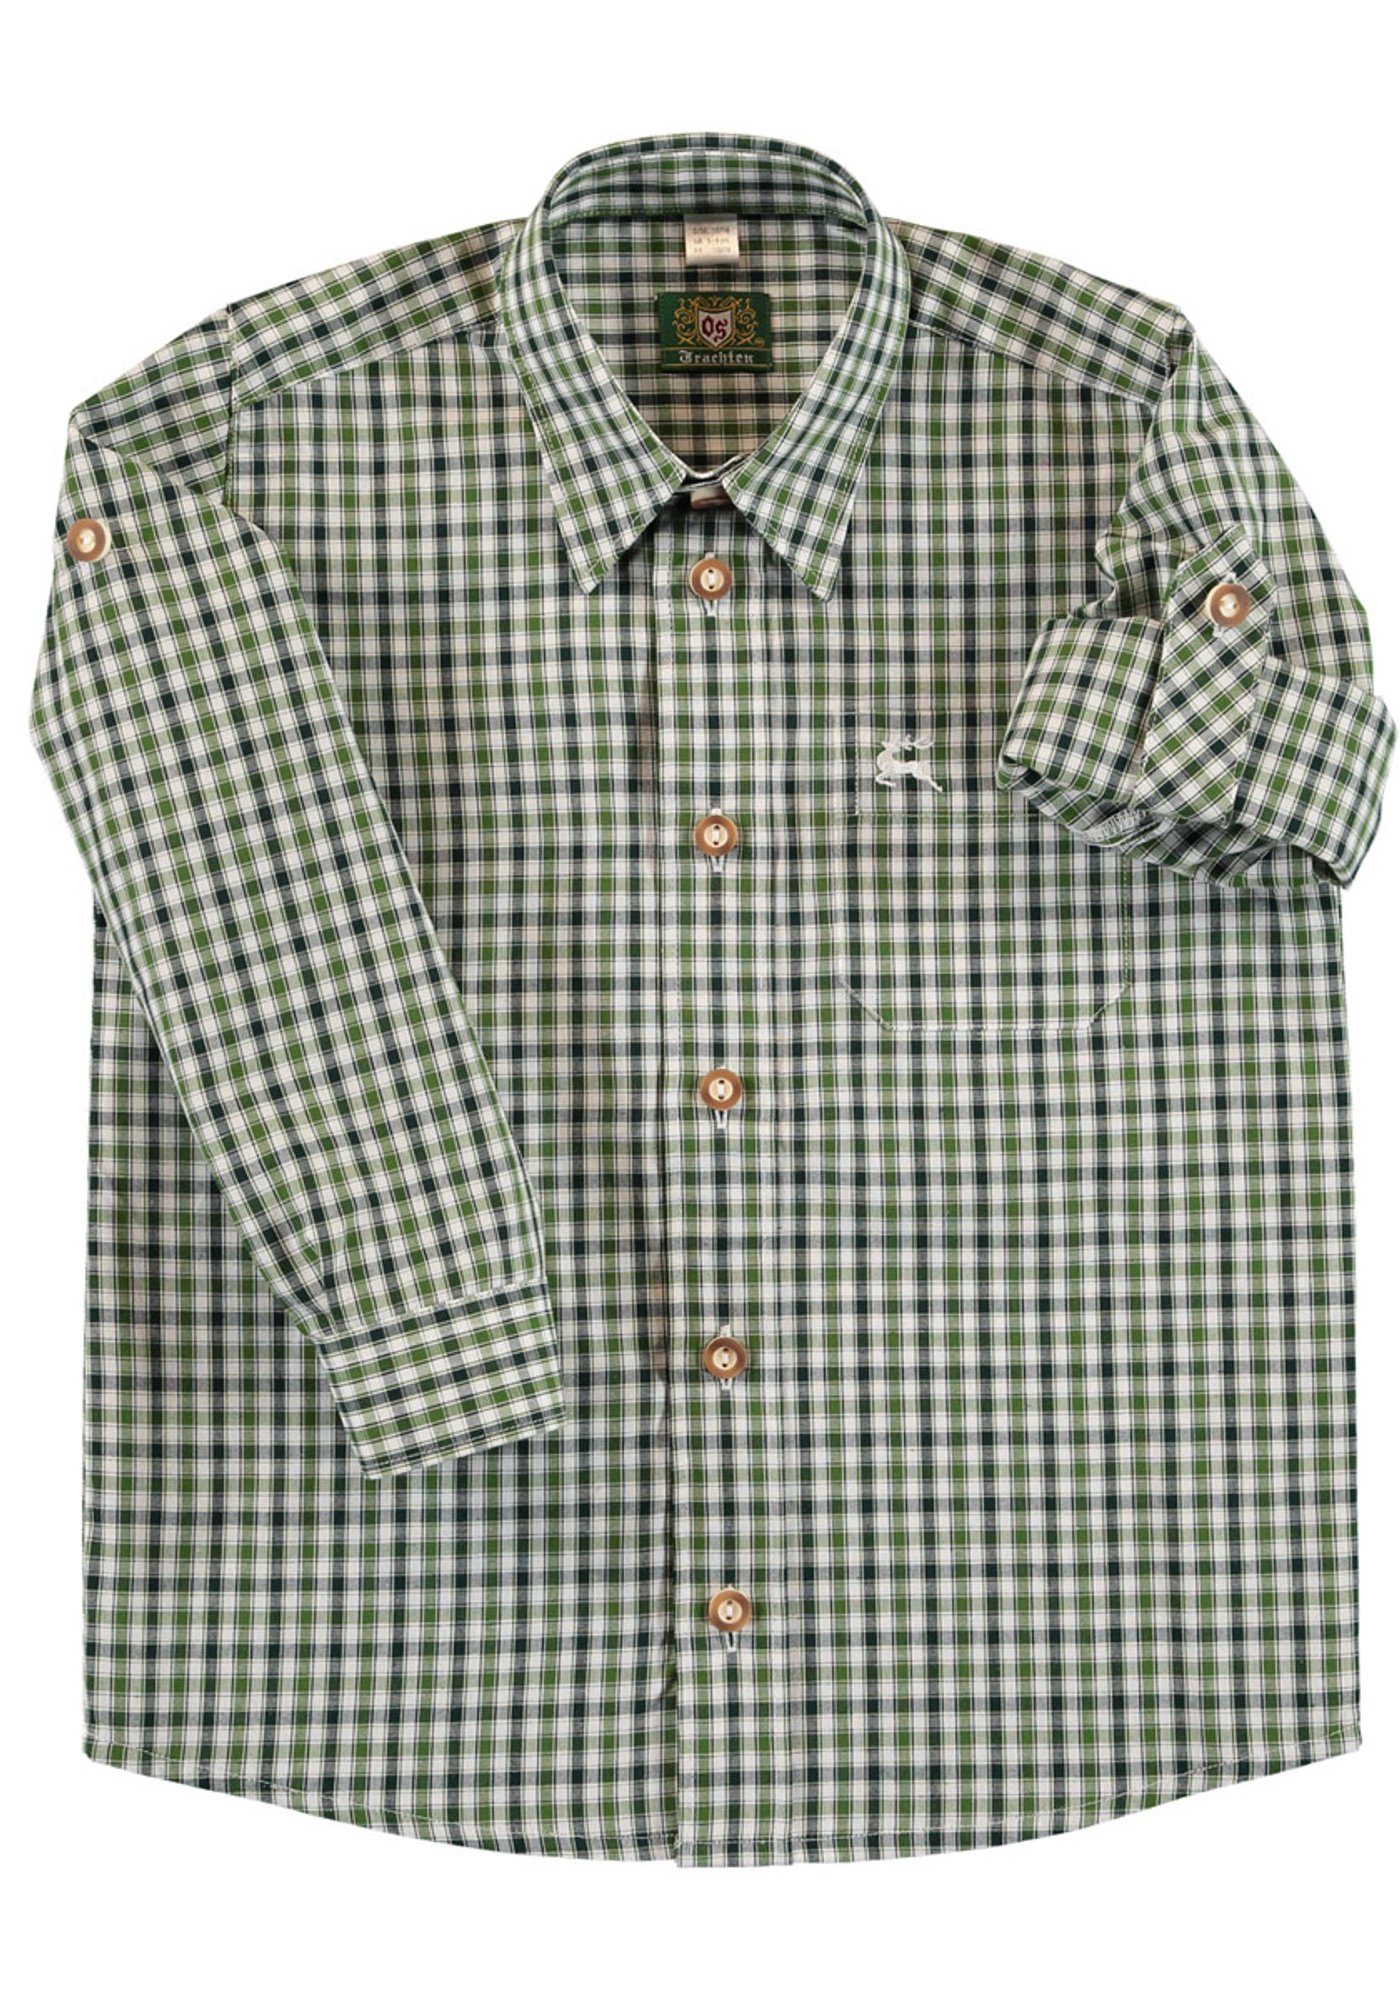 auf Jungen der Trachtenhemd OS-Trachten Brusttasche Hirsch-Stickerei Langarm Hemd dunkelgrün mit Skimli